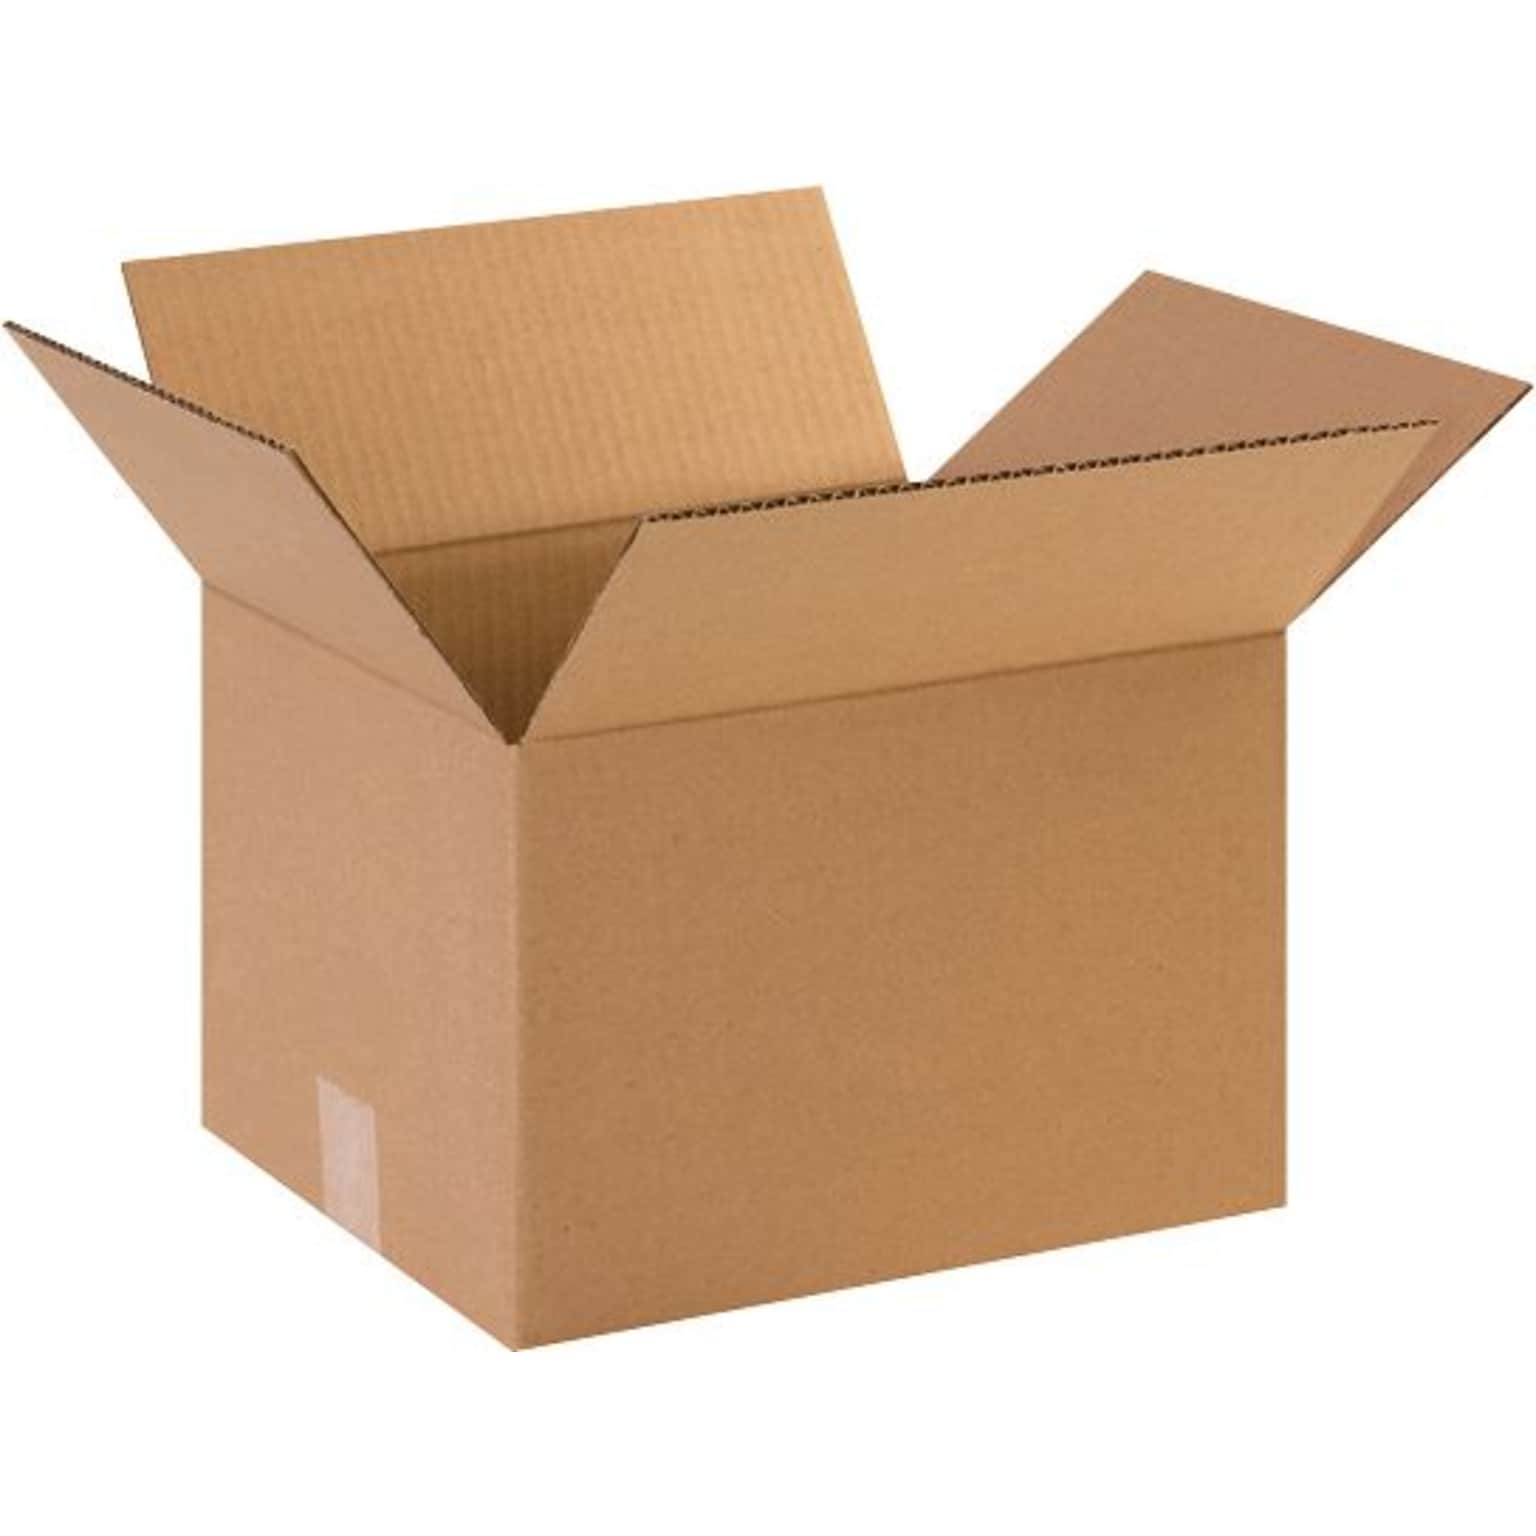 12 x 10 x 8 Shipping Boxes, Brown, 25/Bundle (HD12108)